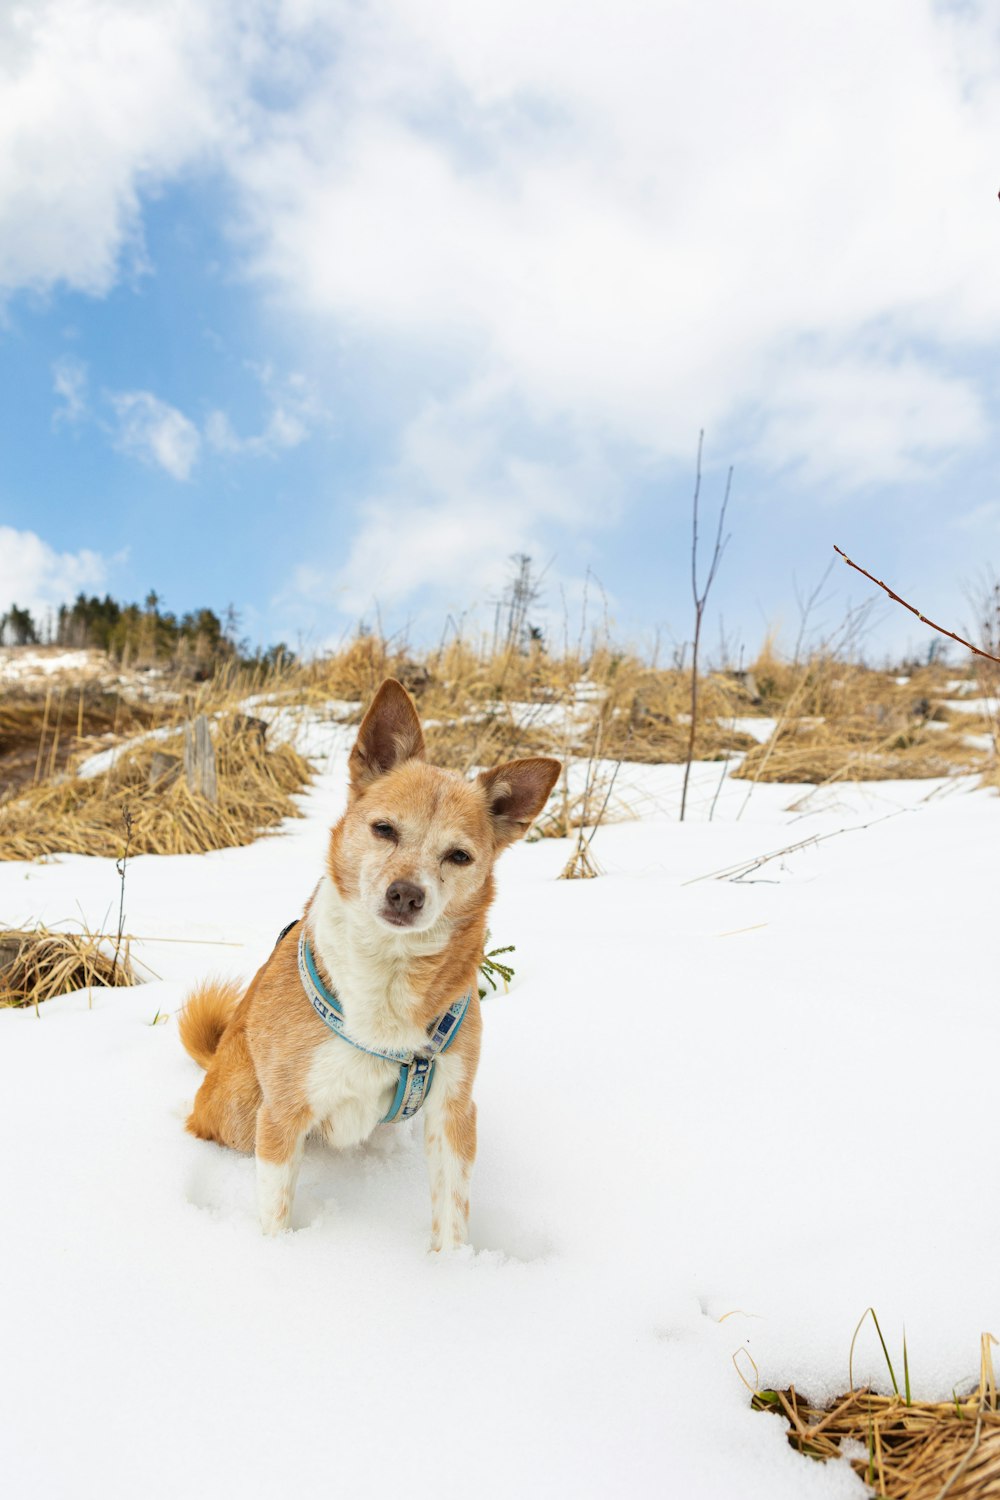 brauner und weißer Hund mit kurzem Mantel tagsüber auf schneebedecktem Boden